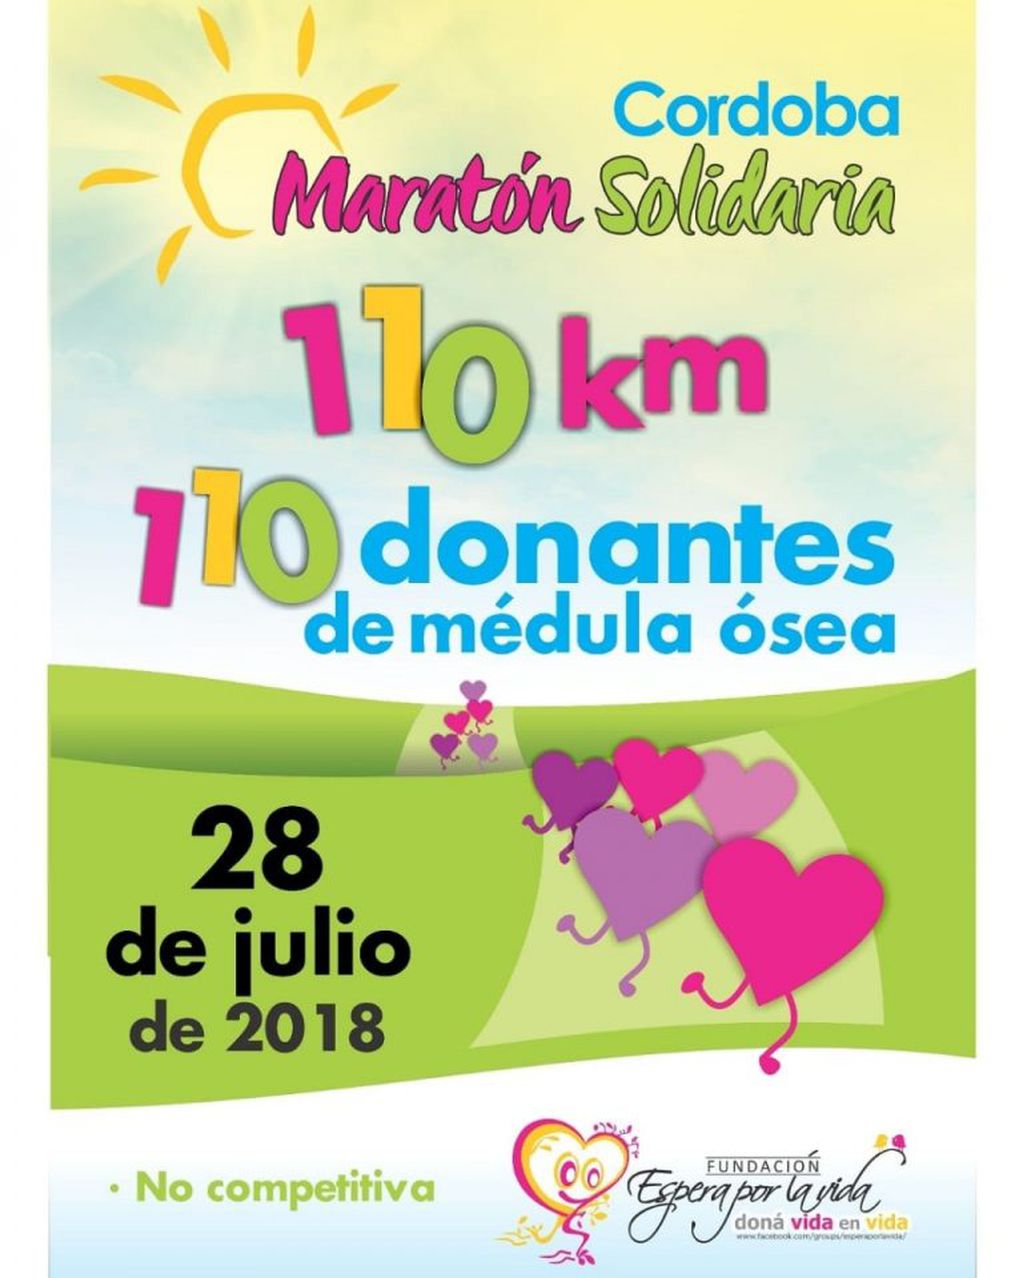 Maratón Solidaria en Córdoba